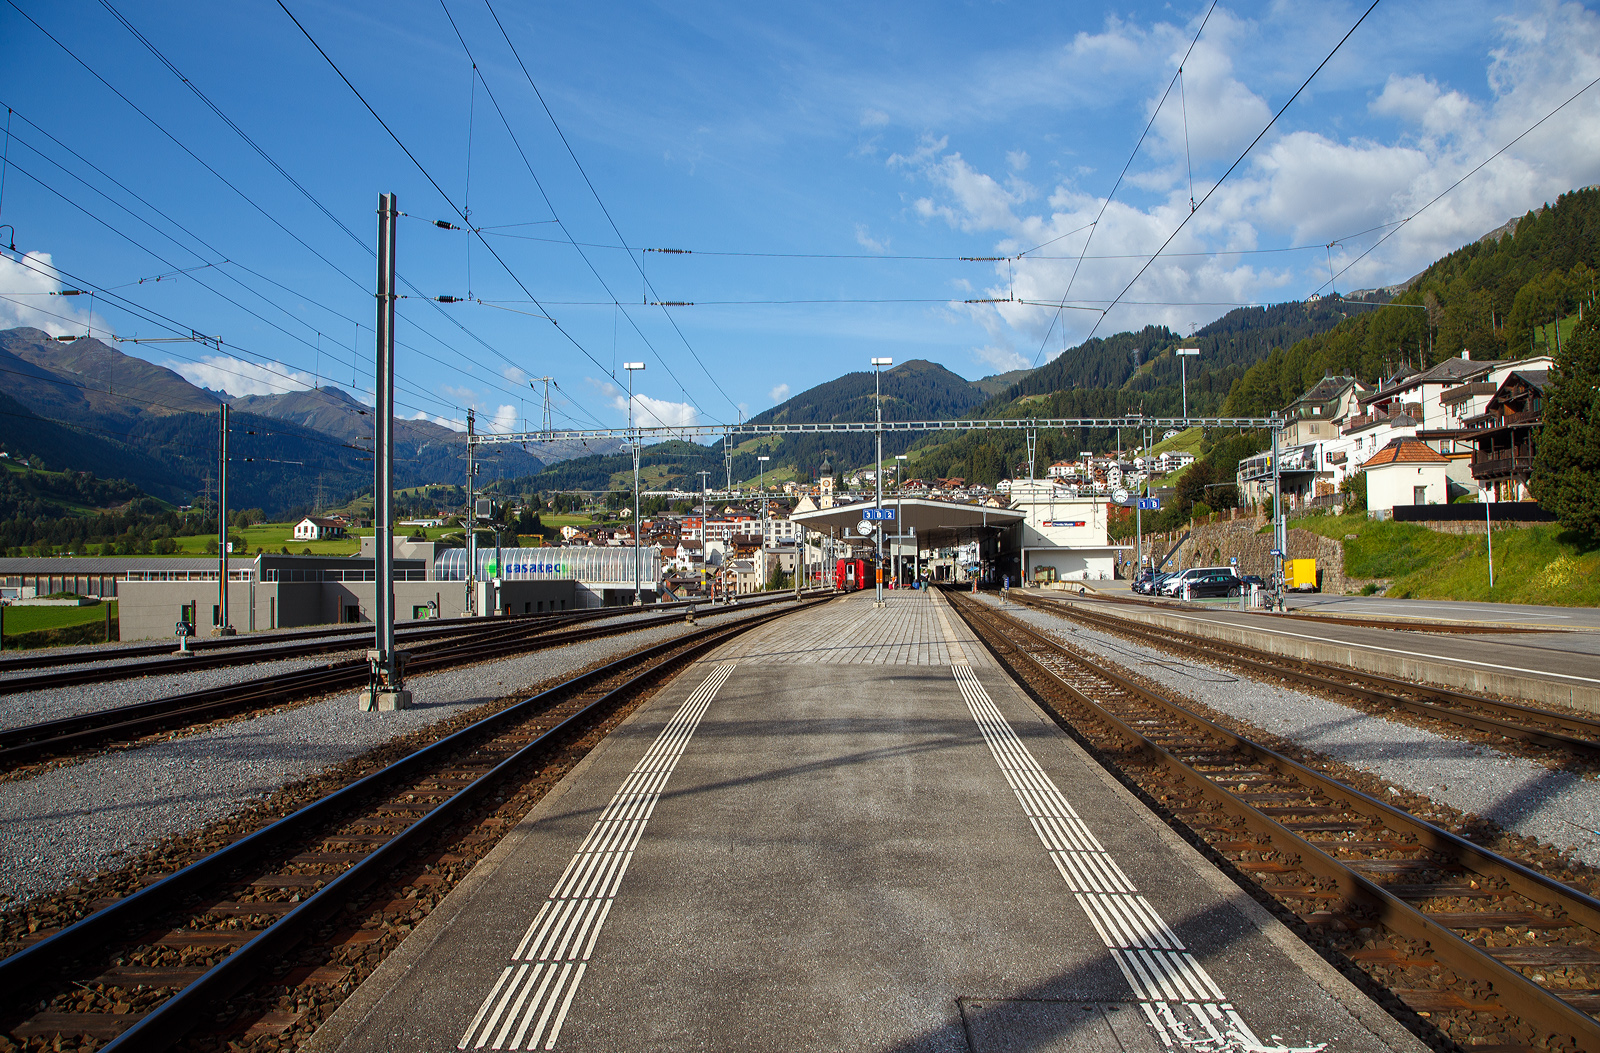 Der RhB und MGB Bahnhof der Klosterstadt Disentis/Mustér  1.130 m ü. M. am 07.September 2021, Blickrichtung Oberalppass.

Der Bahnhof ist Endpunkt von der der Bahnstrecke Reichenau-Tamins – Disentis/Mustér auch Oberländerlinie, Surselvalinie oder Vorderrheinlinie (Fahrplanfeld 920) der Rhätischen Bahn (RhB). Er ist aber auch zugleich der Startpunkt Furka-Oberalp-Bahn (Fahrplanfeld 142 und 143) der Matterhorn-Gotthard-Bahn (MGB), bzw. bis zur Fusion (zum 01. Jan. 2003) der eigenständigen  Furka-Oberalp-Bahn (FO). Die MGB Strecke geht von hier in Richtung Westen mit Zahnstangenabschnitten (bis zu 110 ‰ Neigung) über den Oberalppass nach Brig hinab. 

Für den berühmten durchgehenden Glacier-Express dient der 
Bahnhof somit auch dem Lokwechsel. Auch wenn beide Bahnen auf Meterspur fahren, so unterscheiden sich doch. Die Rhätischen Bahn (RhB) ist ja eine reine Adhäsionsbahn und die Matterhorn-Gotthard-Bahn (MGB) eine gemischte Zahnrad- und Adhäsionsbahn.